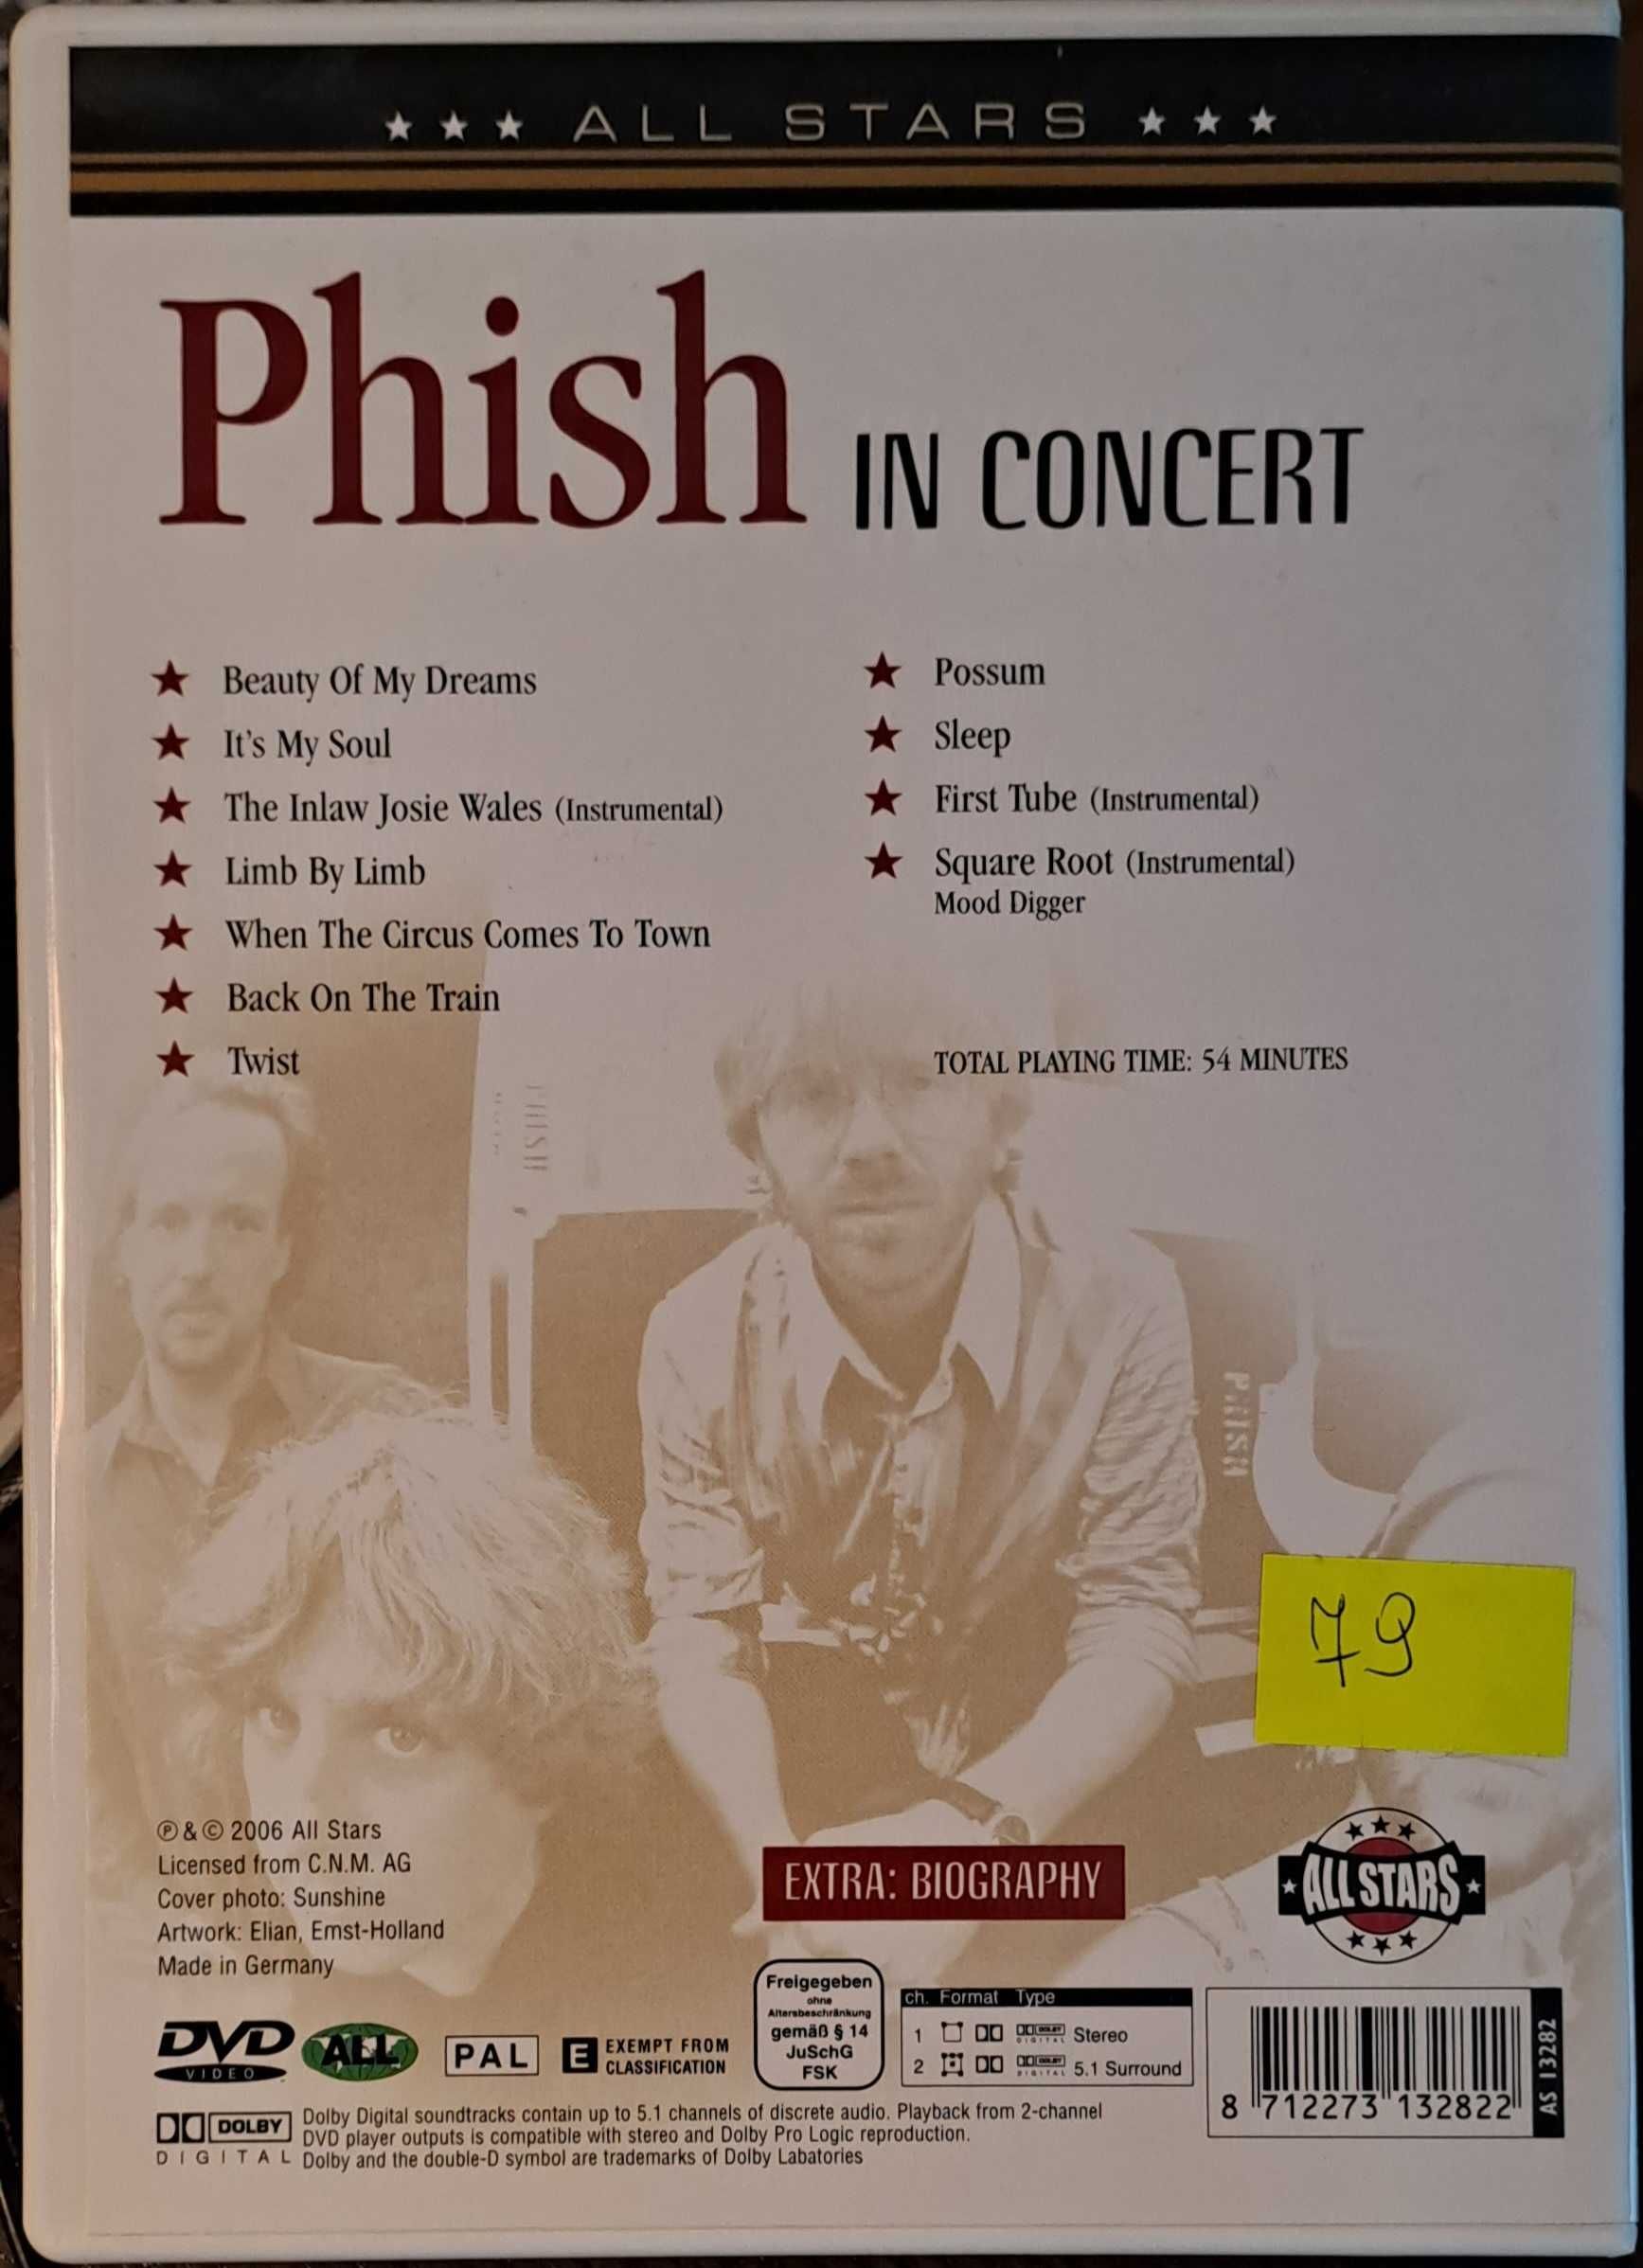 Phish - "Possum"